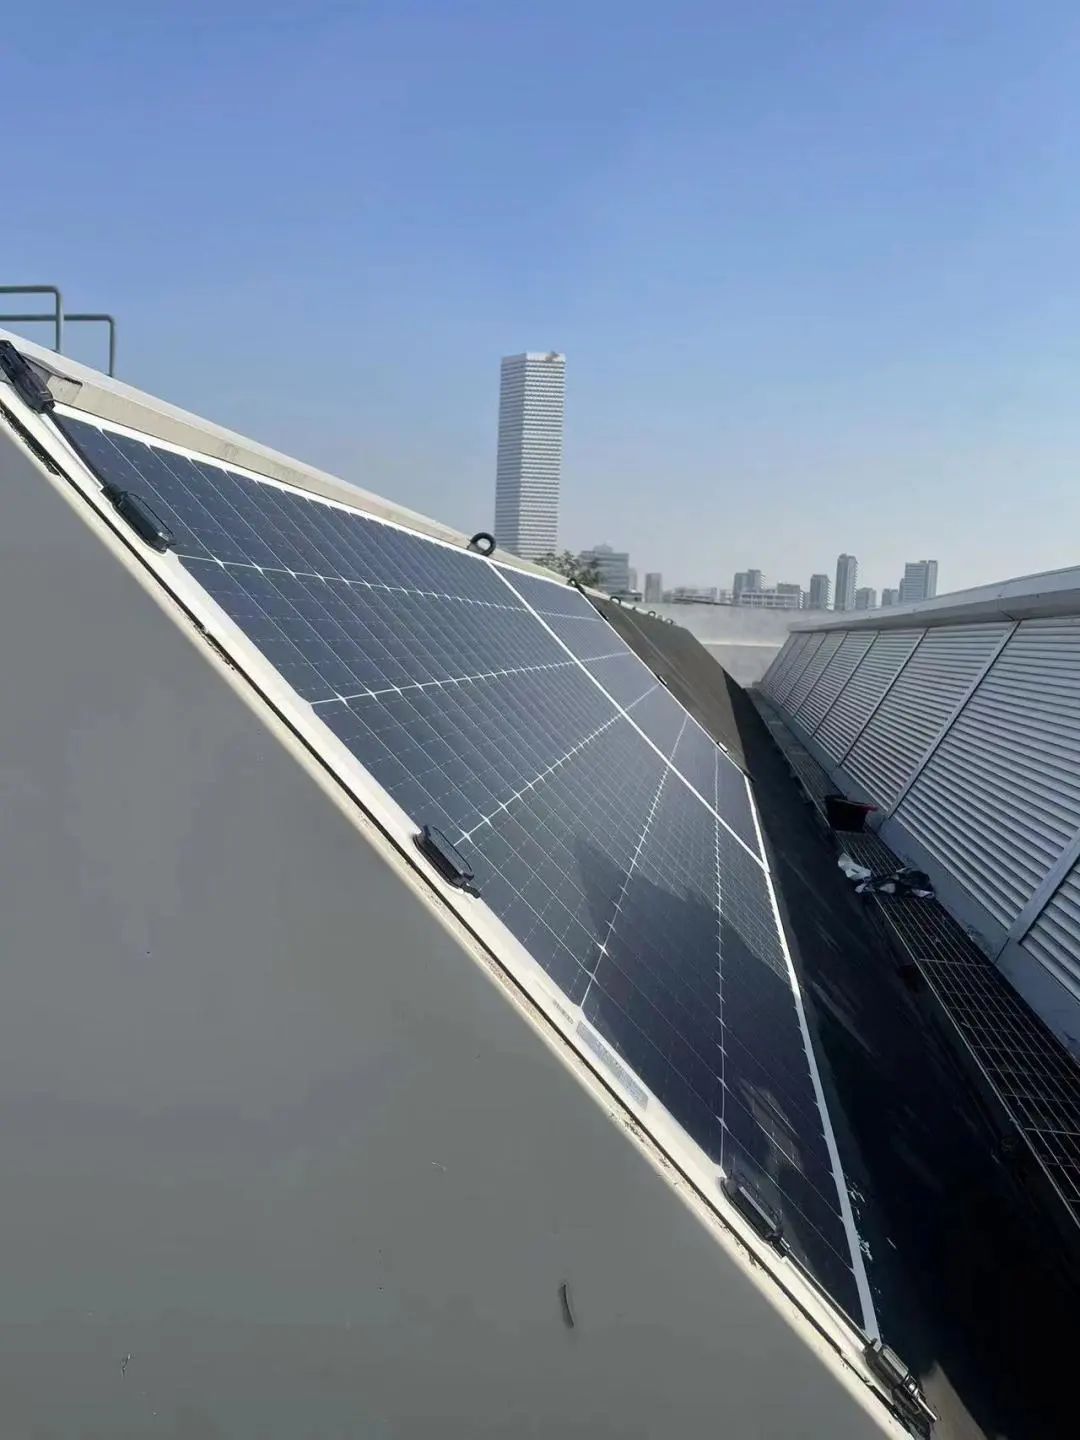 科技与艺术之美 | 澳门太阳集团6138轻柔组件落地美术馆屋顶